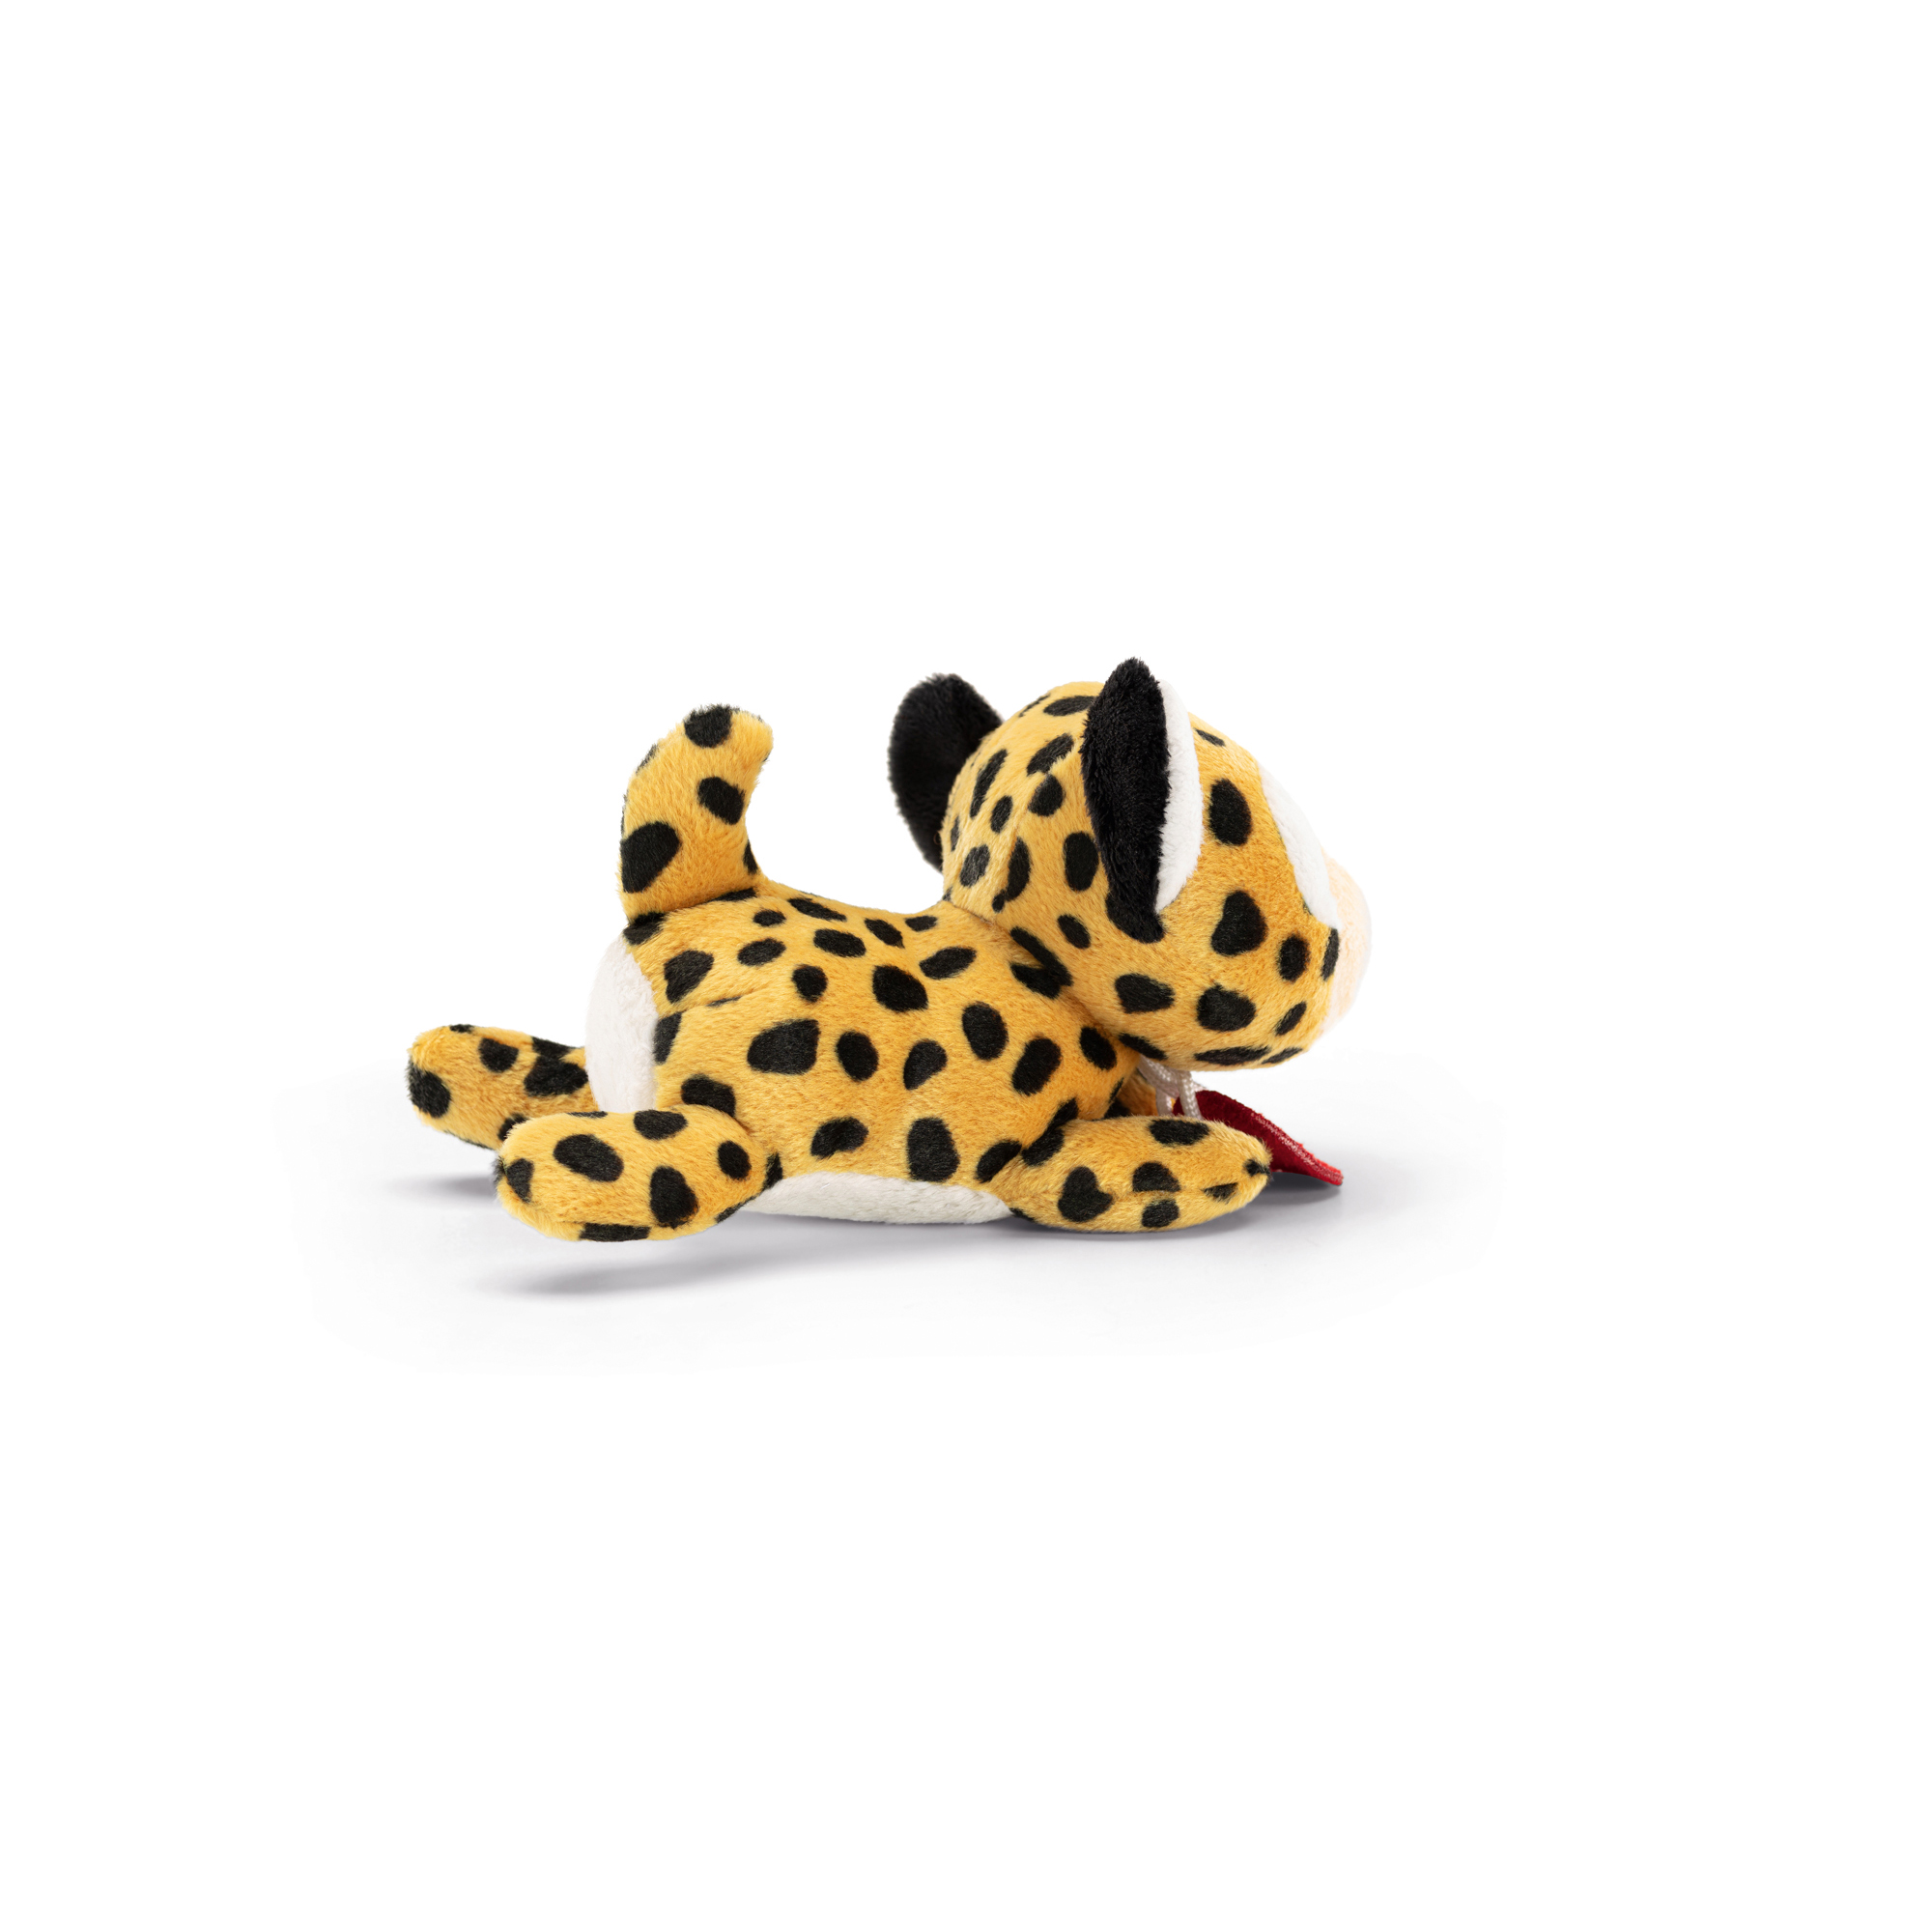 Peluche Trudi Friend Leopardo 10 cm - Trudi